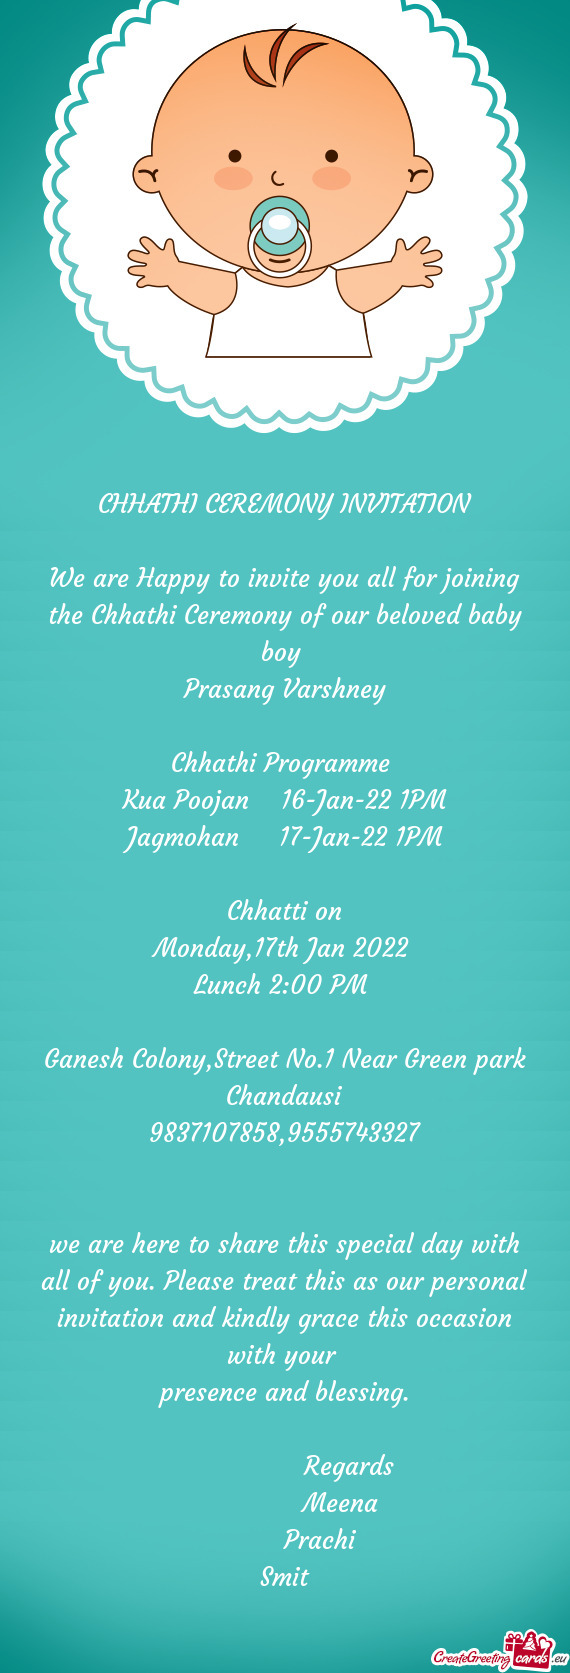 R beloved baby boy 
 Prasang Varshney
 
 Chhathi Programme 
 Kua Poojan 16-Jan-22 1PM
 Jagmohan